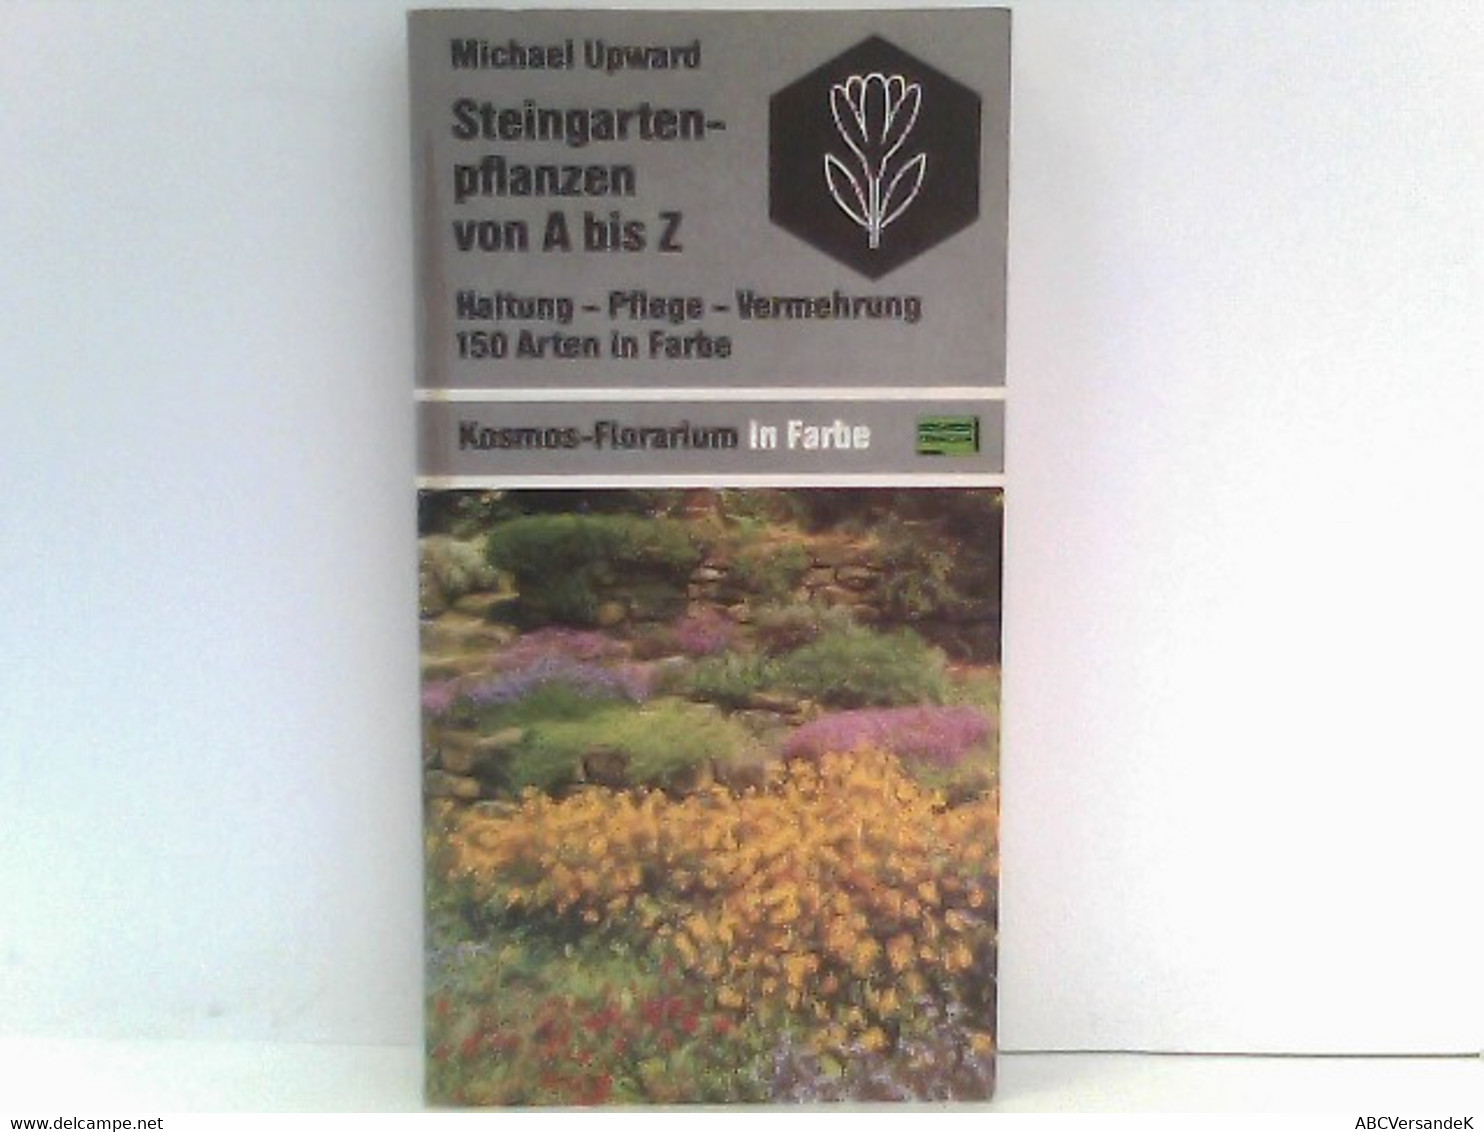 Steingartenpflanzen Von A Bis Z: Haltung - Pflege - Vermehrung. 150 Arten In Farbe (Kosmos-Florarium In Farbe) - Botanik